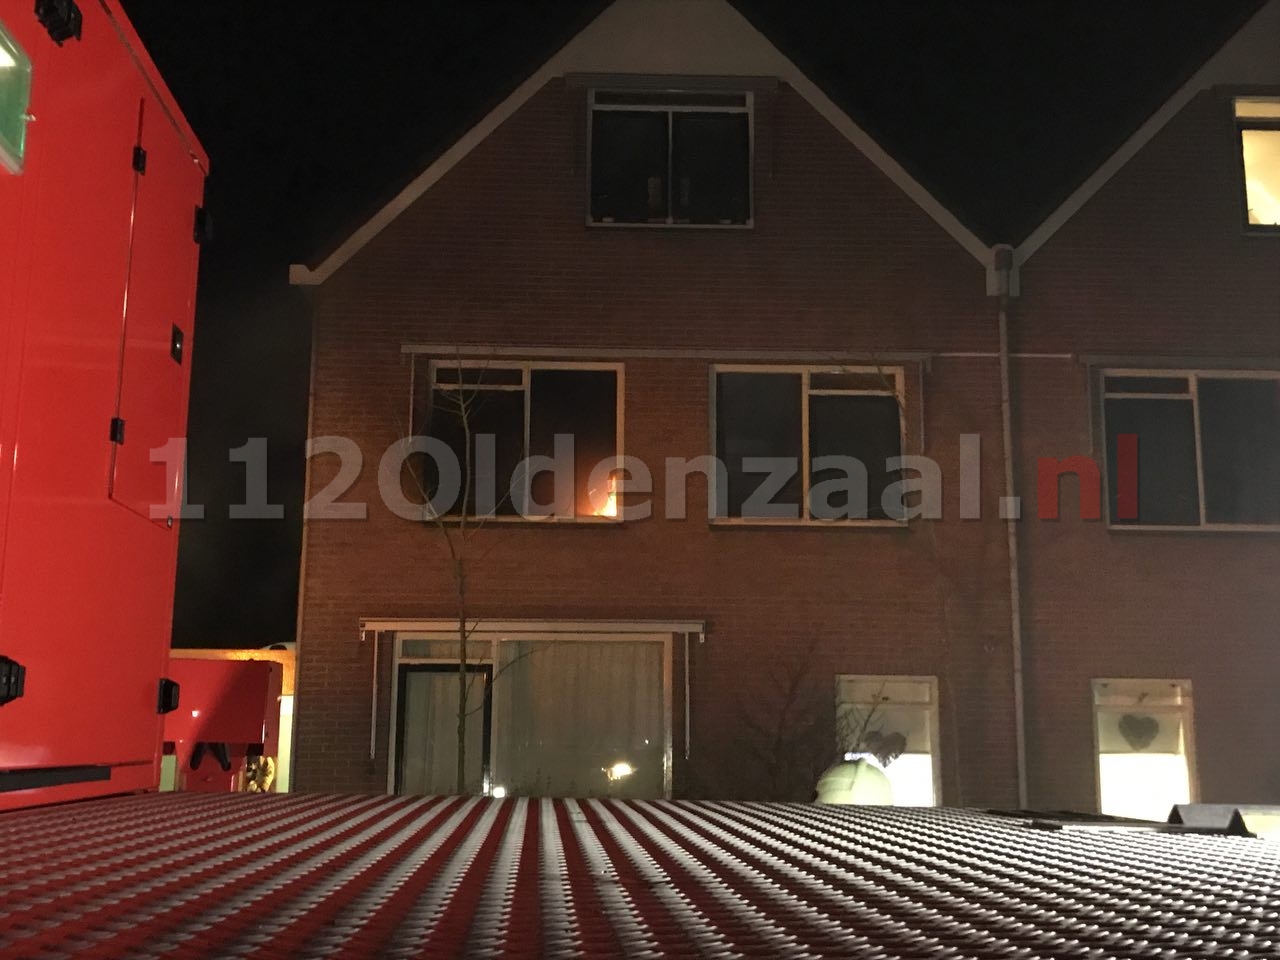 UPDATE; Oorzaak brand in slaapkamer jeugdzorginstelling Oldenzaal nog niet bekend